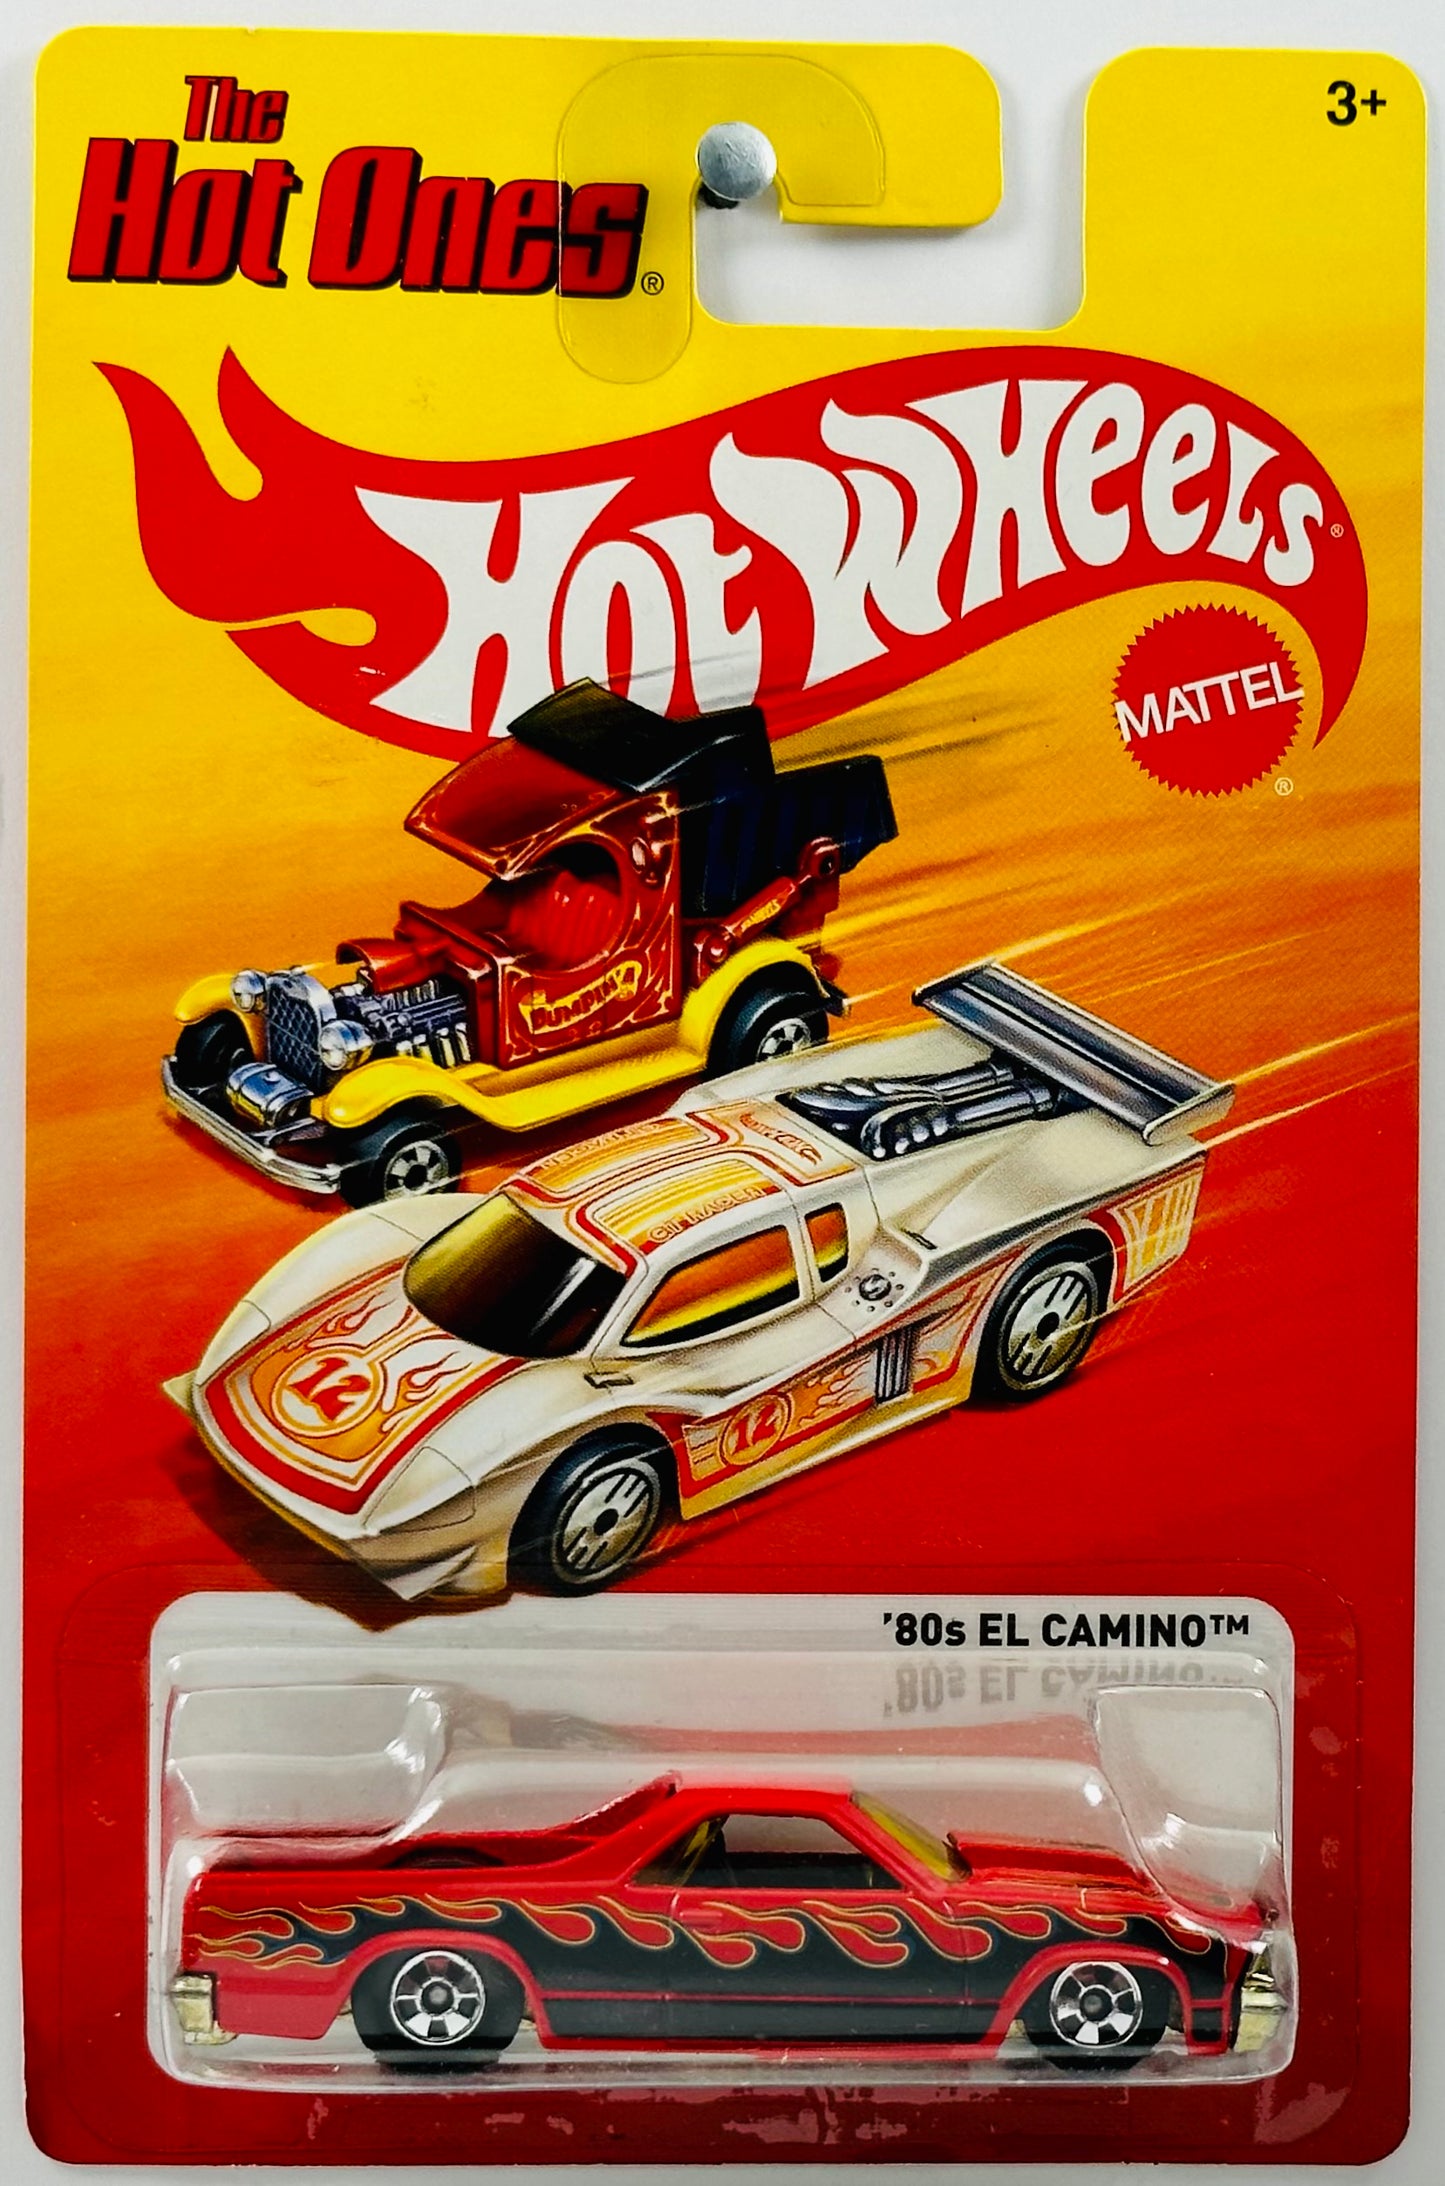 Hot Wheels 2012 - The Hot Ones - '80s El Camino - Red - Basic Wheels - Metal/Metal - Lightning Fast Metal Racers